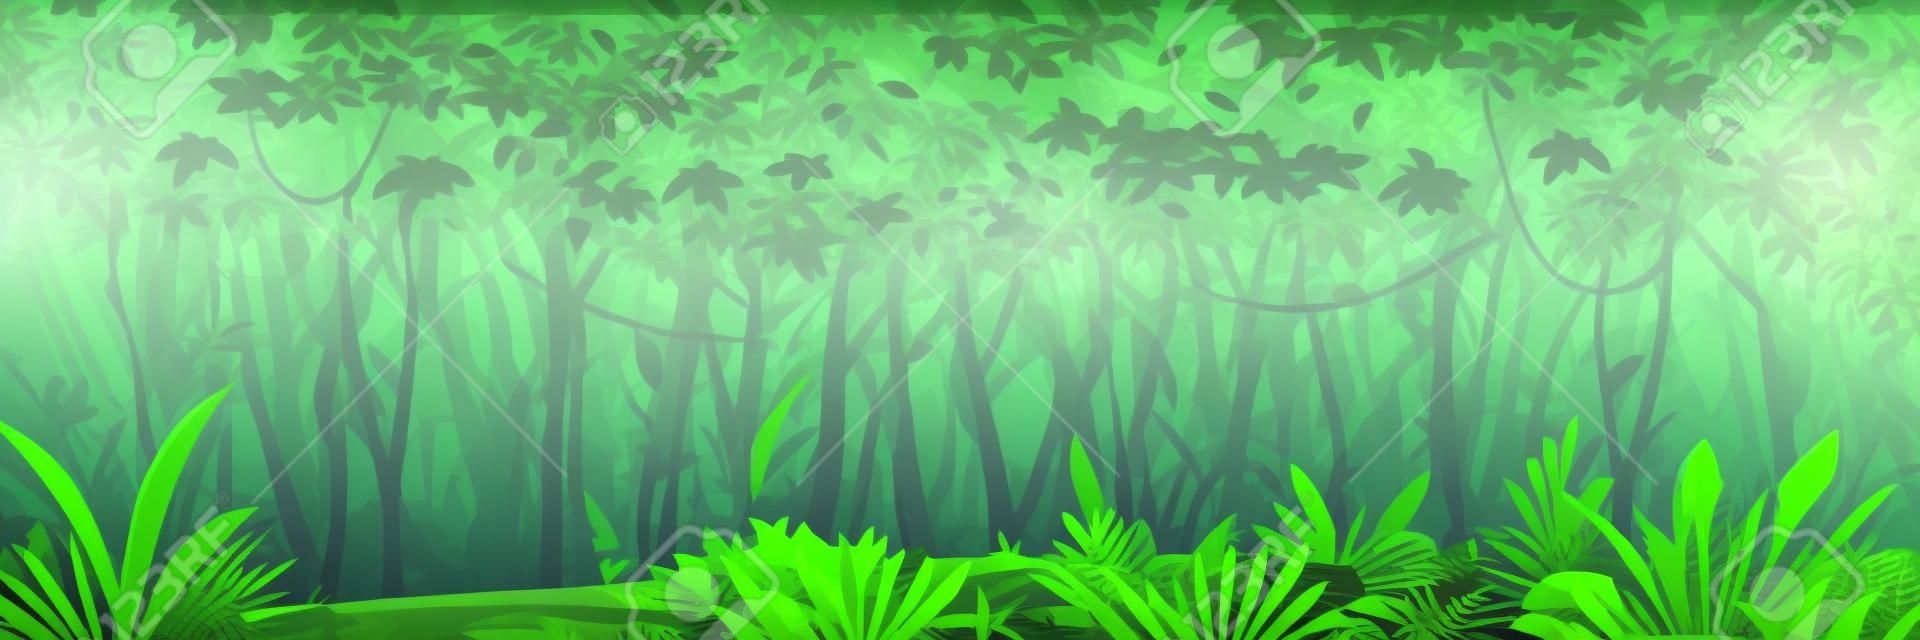 Bosque de selva oscura y húmeda salvaje con árboles, arbustos y lianas, paisaje natural con follaje de selva verde y plantas exóticas que crecen en el suelo, banner horizontal con plantas tropicales en un día soleado